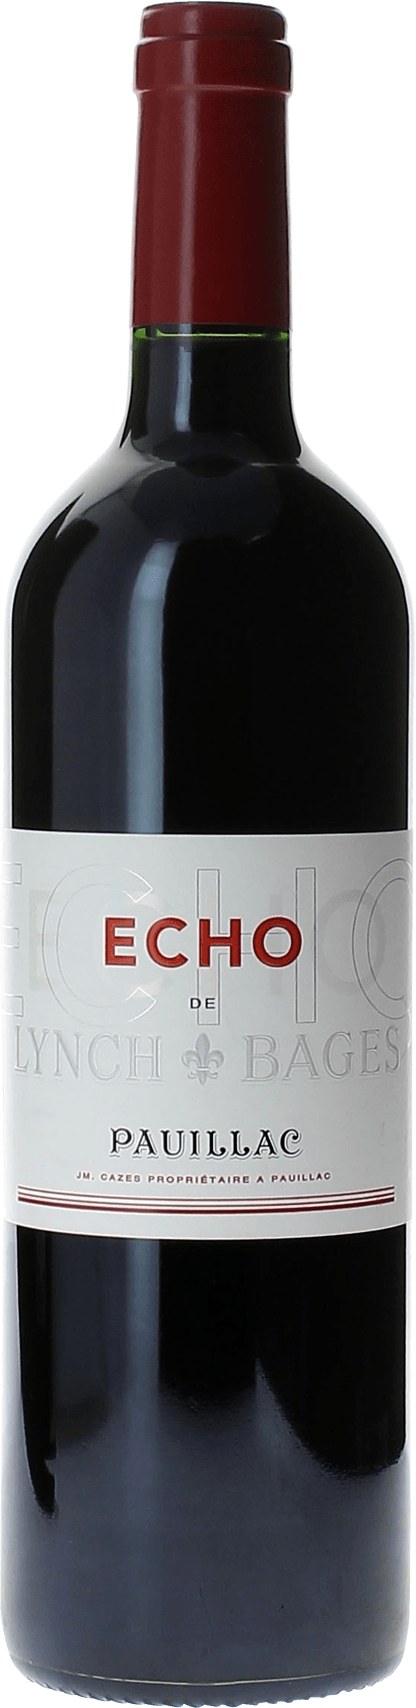 Echo lynch bages 2012 2me vin de LYNCH BAGES Pauillac, Bordeaux rouge